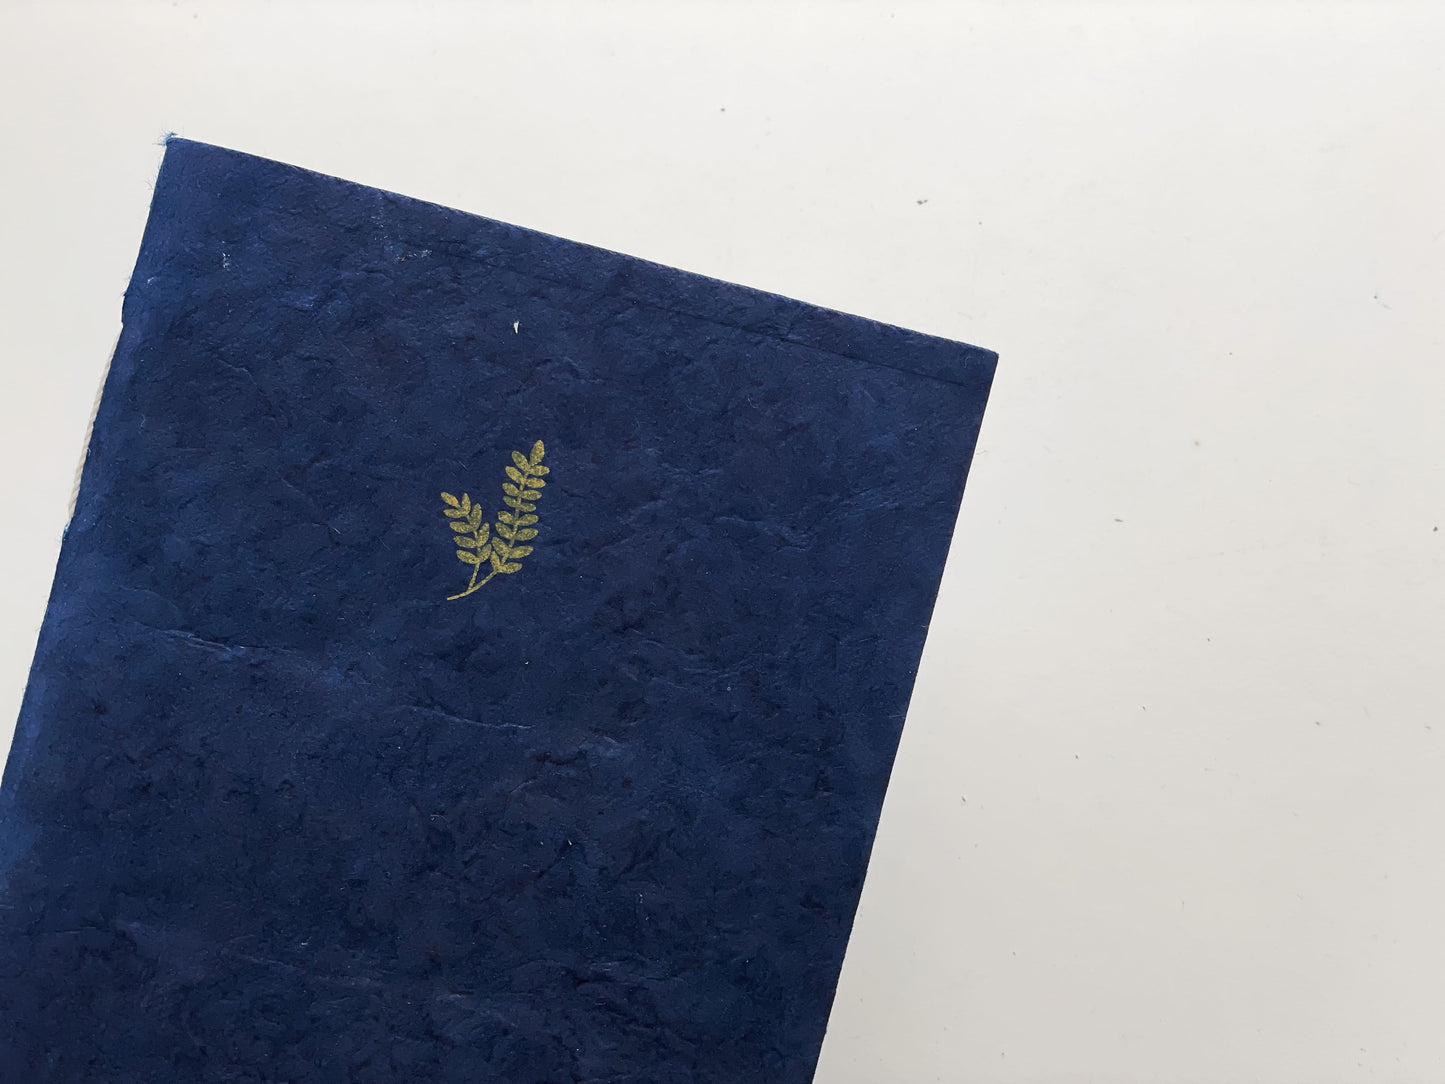 SECONDS - Indigo Blue Softcover Notebook